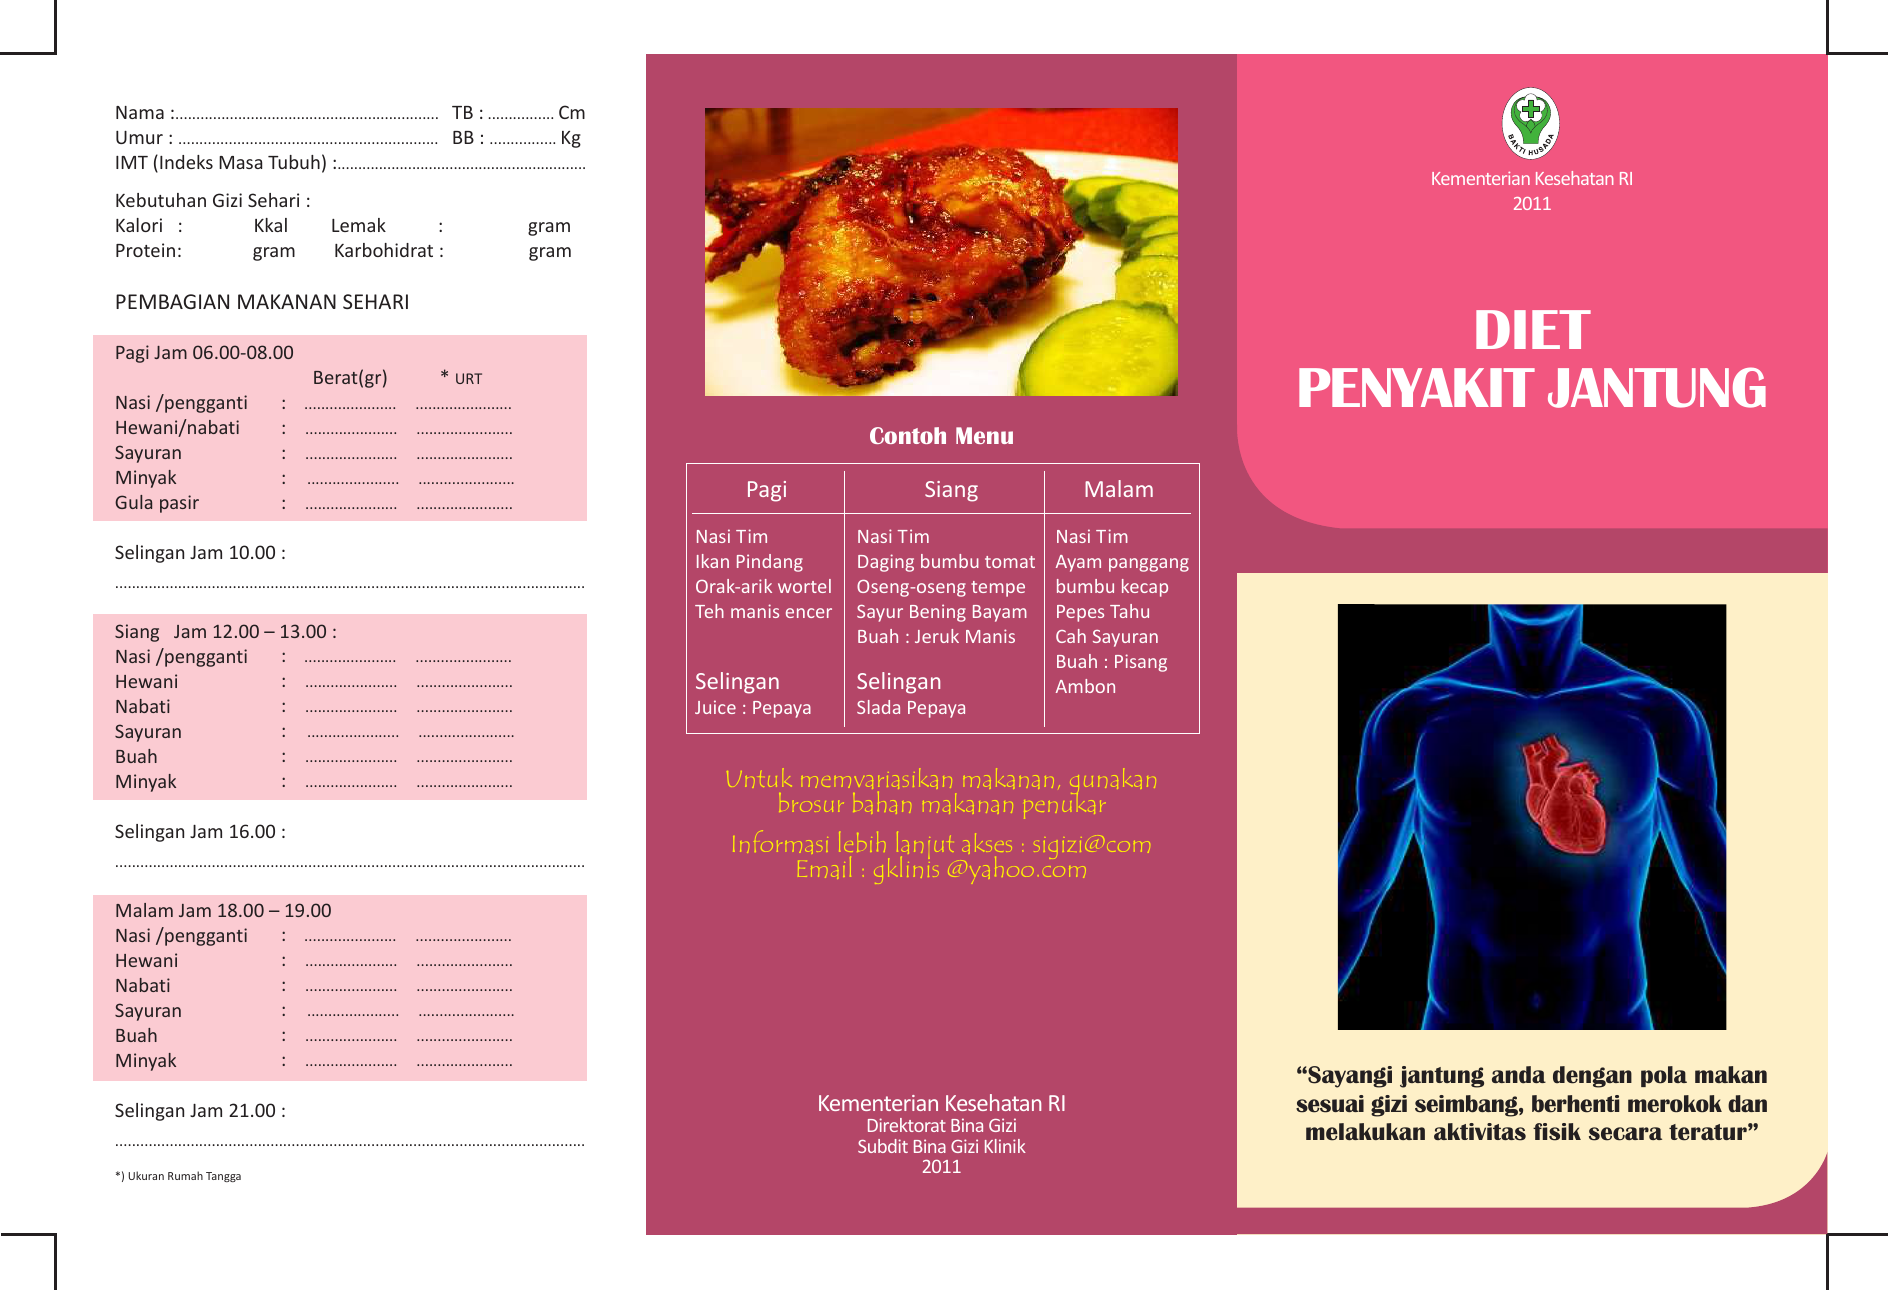 Diet Penyakit Jantung Kementerian Kesehatan